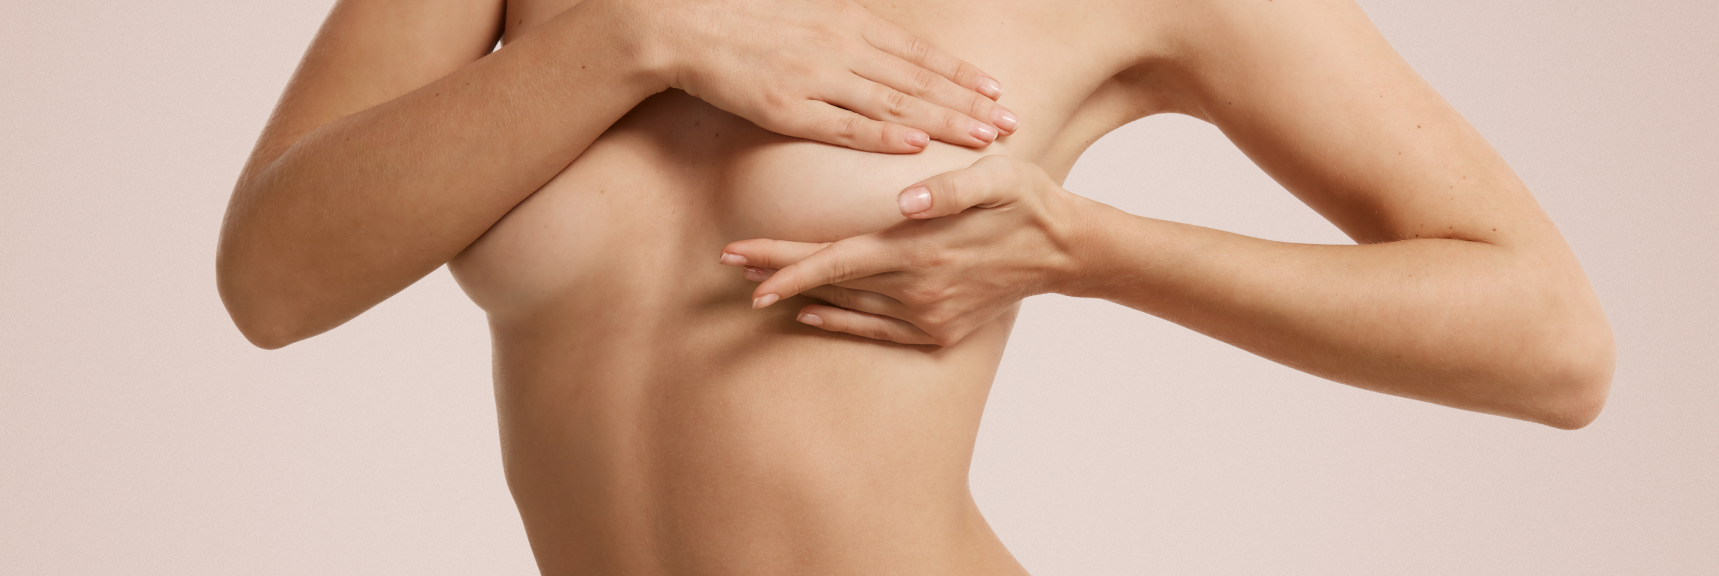 Конусообразная грудь - проблема, о которой не хотят говорить - Christinas Clinic